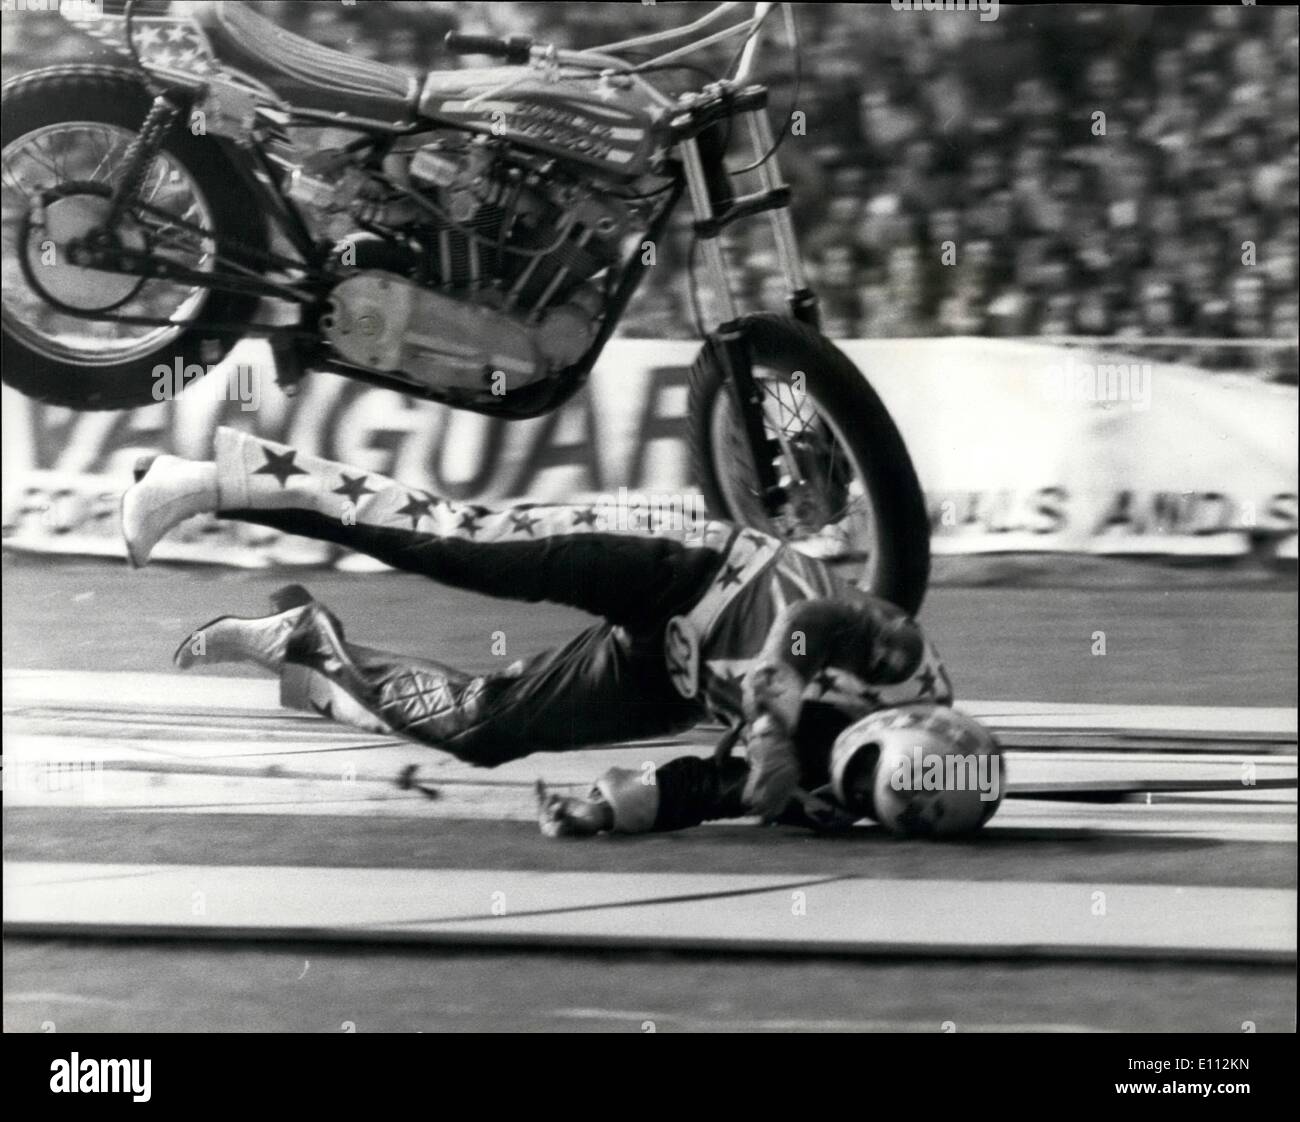 05 maggio 1975 - Stuntman Evel Knievel si blocca in cicli motore salto oltre 13 autobus: American motor cycle stuntman Evel Knievel è stato Foto Stock